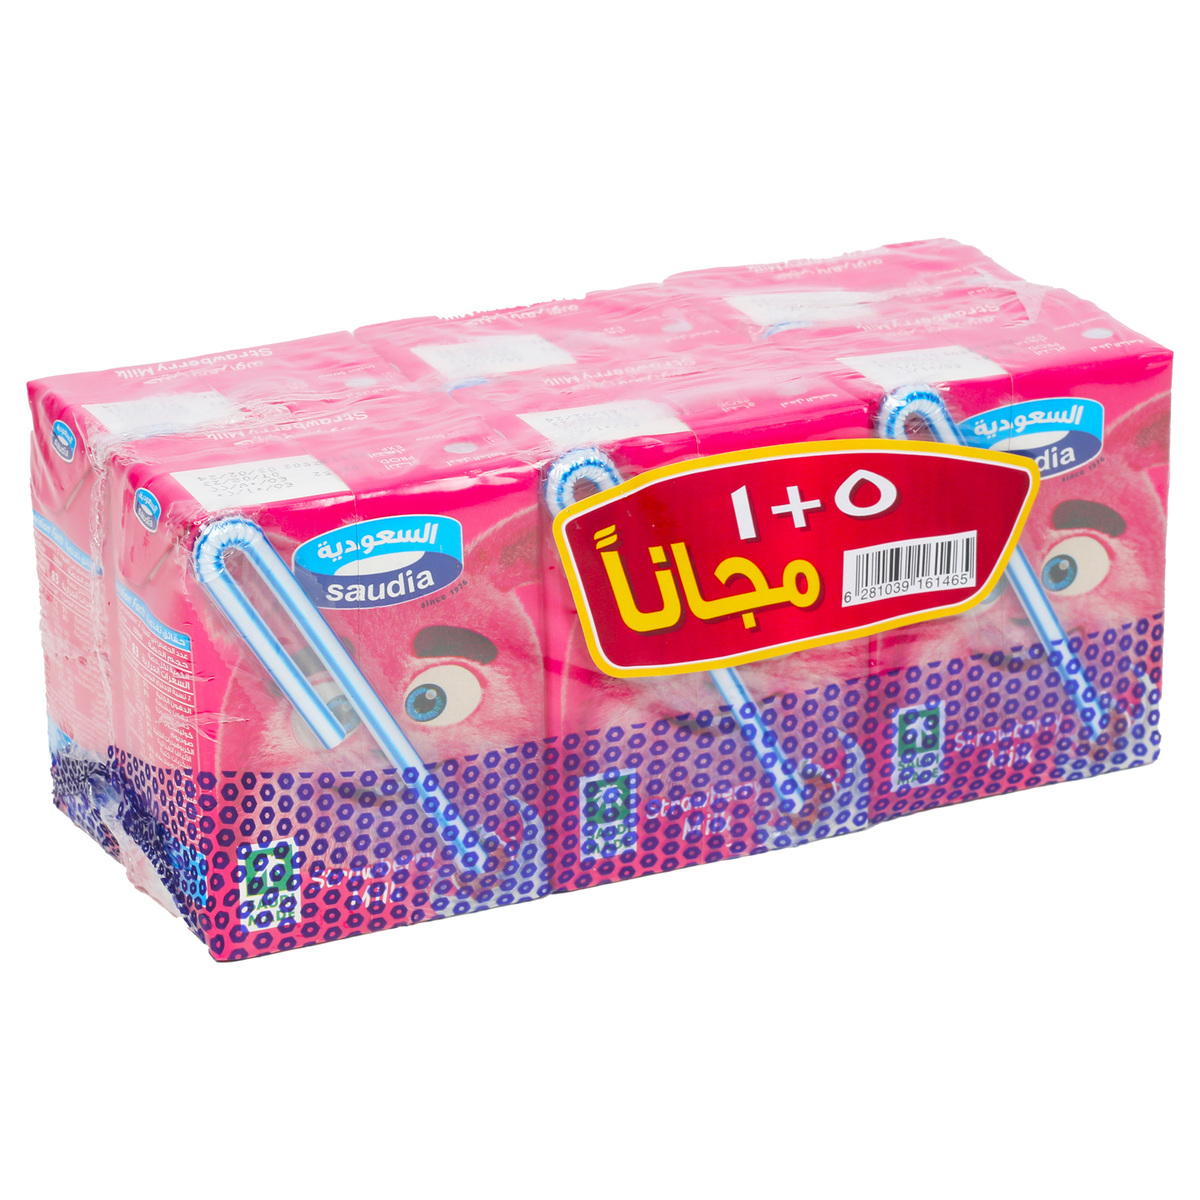 Saudia Strawberry Milk 18 x 200 ml